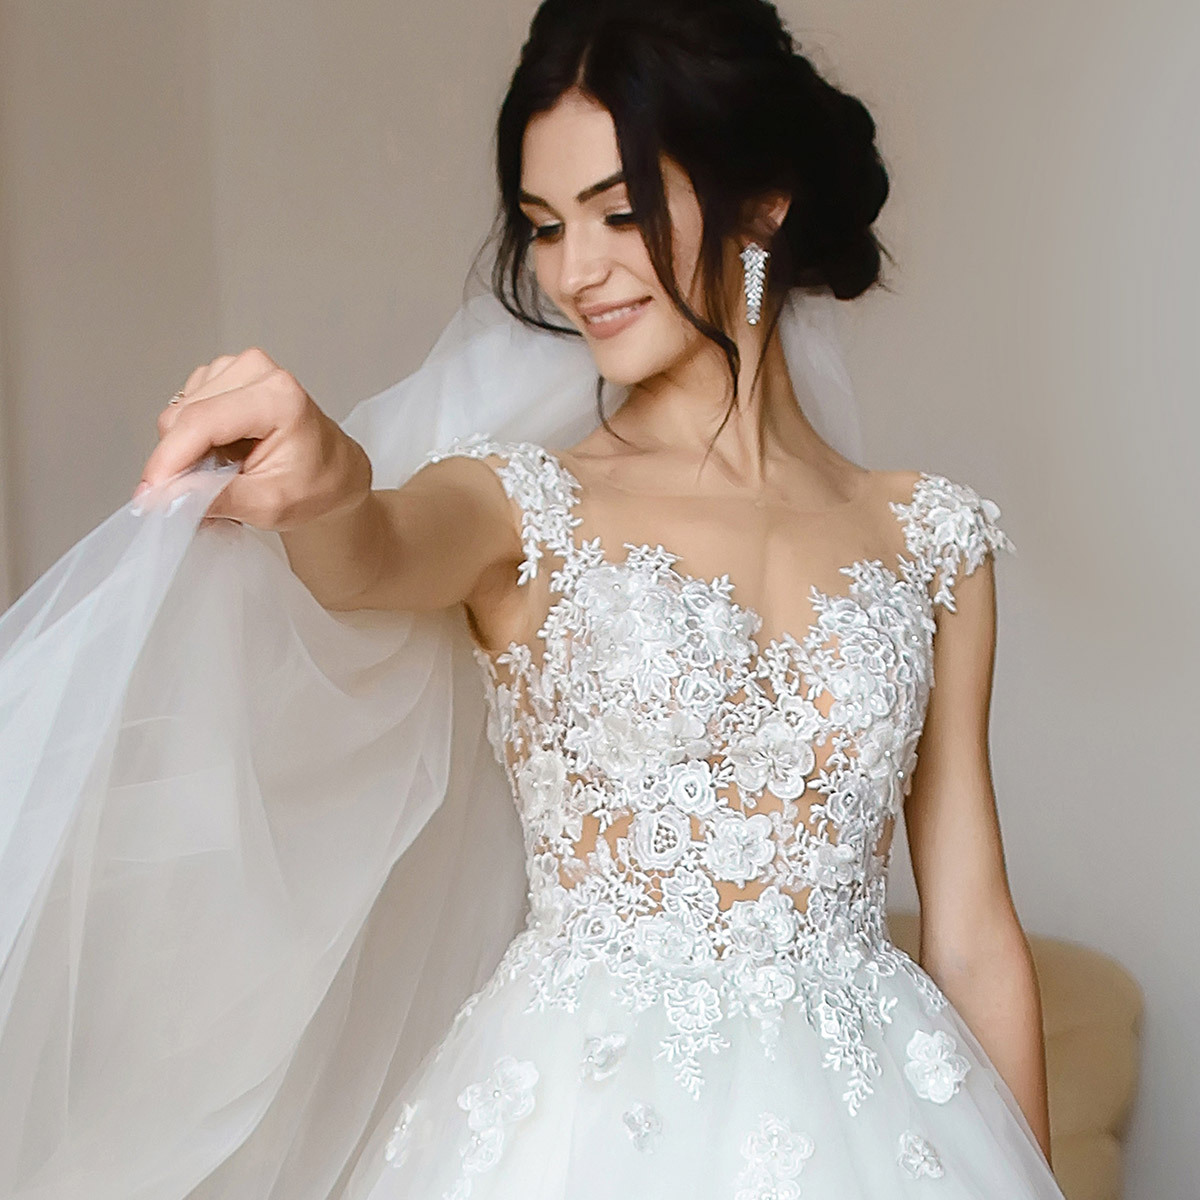 White Floral Sleeveless Wedding Gown · Free Stock Photo